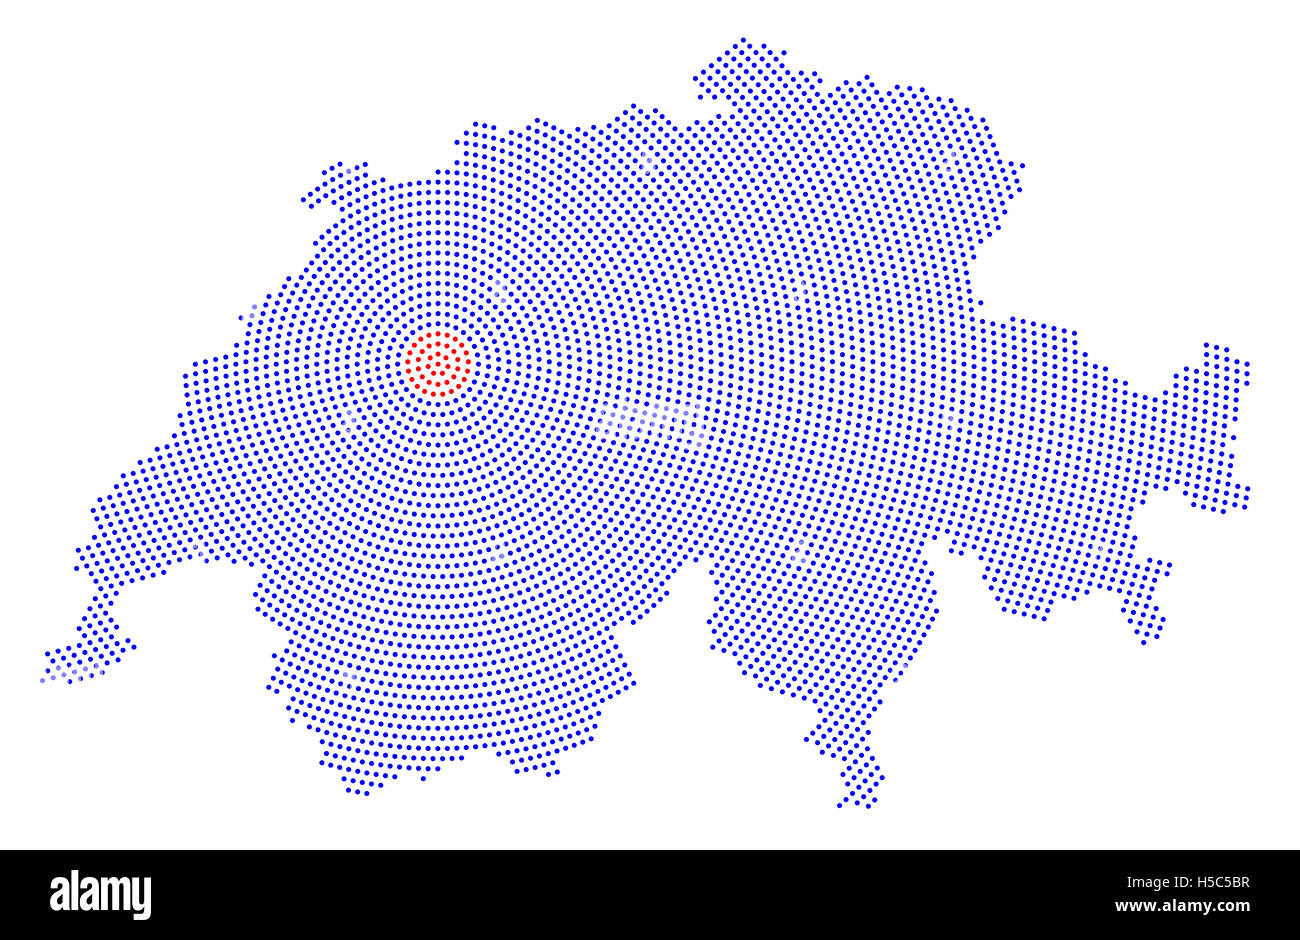 Radial suisse carte de points. Des points bleus allant de la capitale Berne en pointillés rouges vers l'extérieur et forme le pays d'ossature. Banque D'Images